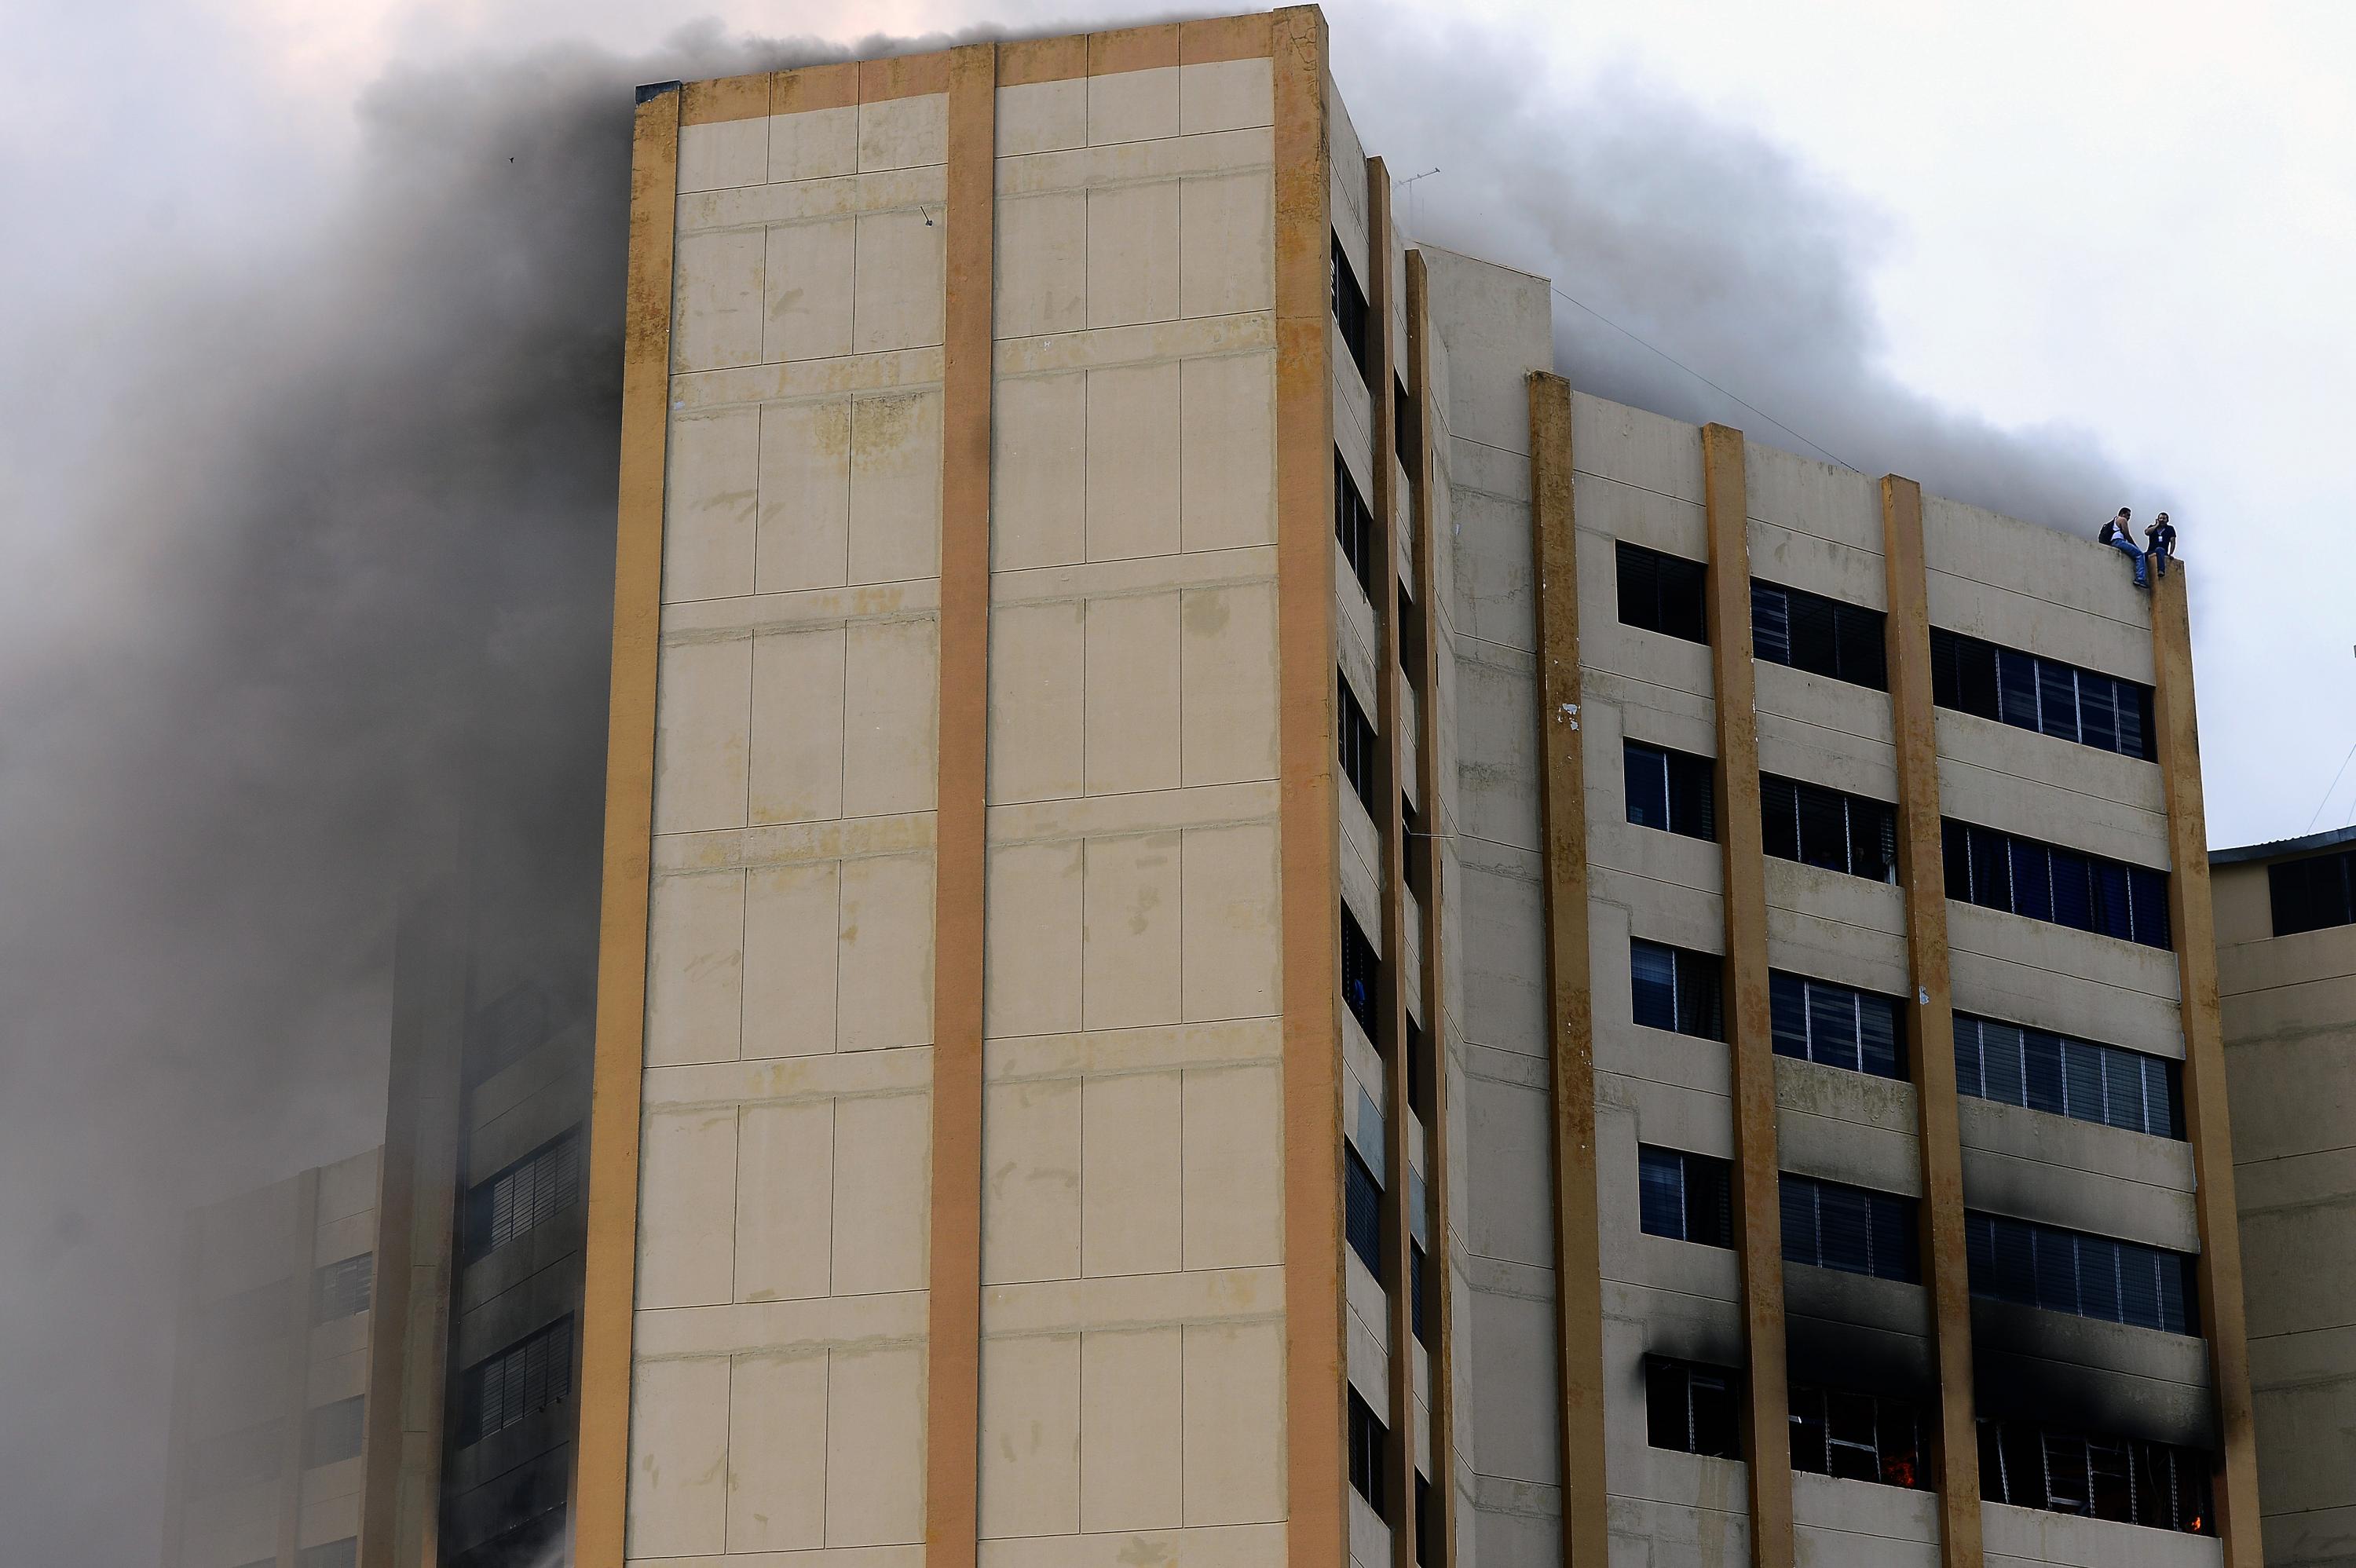 Dos trabajadores del Ministerio de Hacienda huyeron del humo y las llamas y se refugiaron en la azotea de la torre tres del edificio. Ambos fueron evacuados por un helicóptero de la Fuerza Aérea, y trasladados hacia el Hospital Militar, donde fueron atendidos por la inhalación de gases tóxicos.  / AFP PHOTO / Marvin Recinos